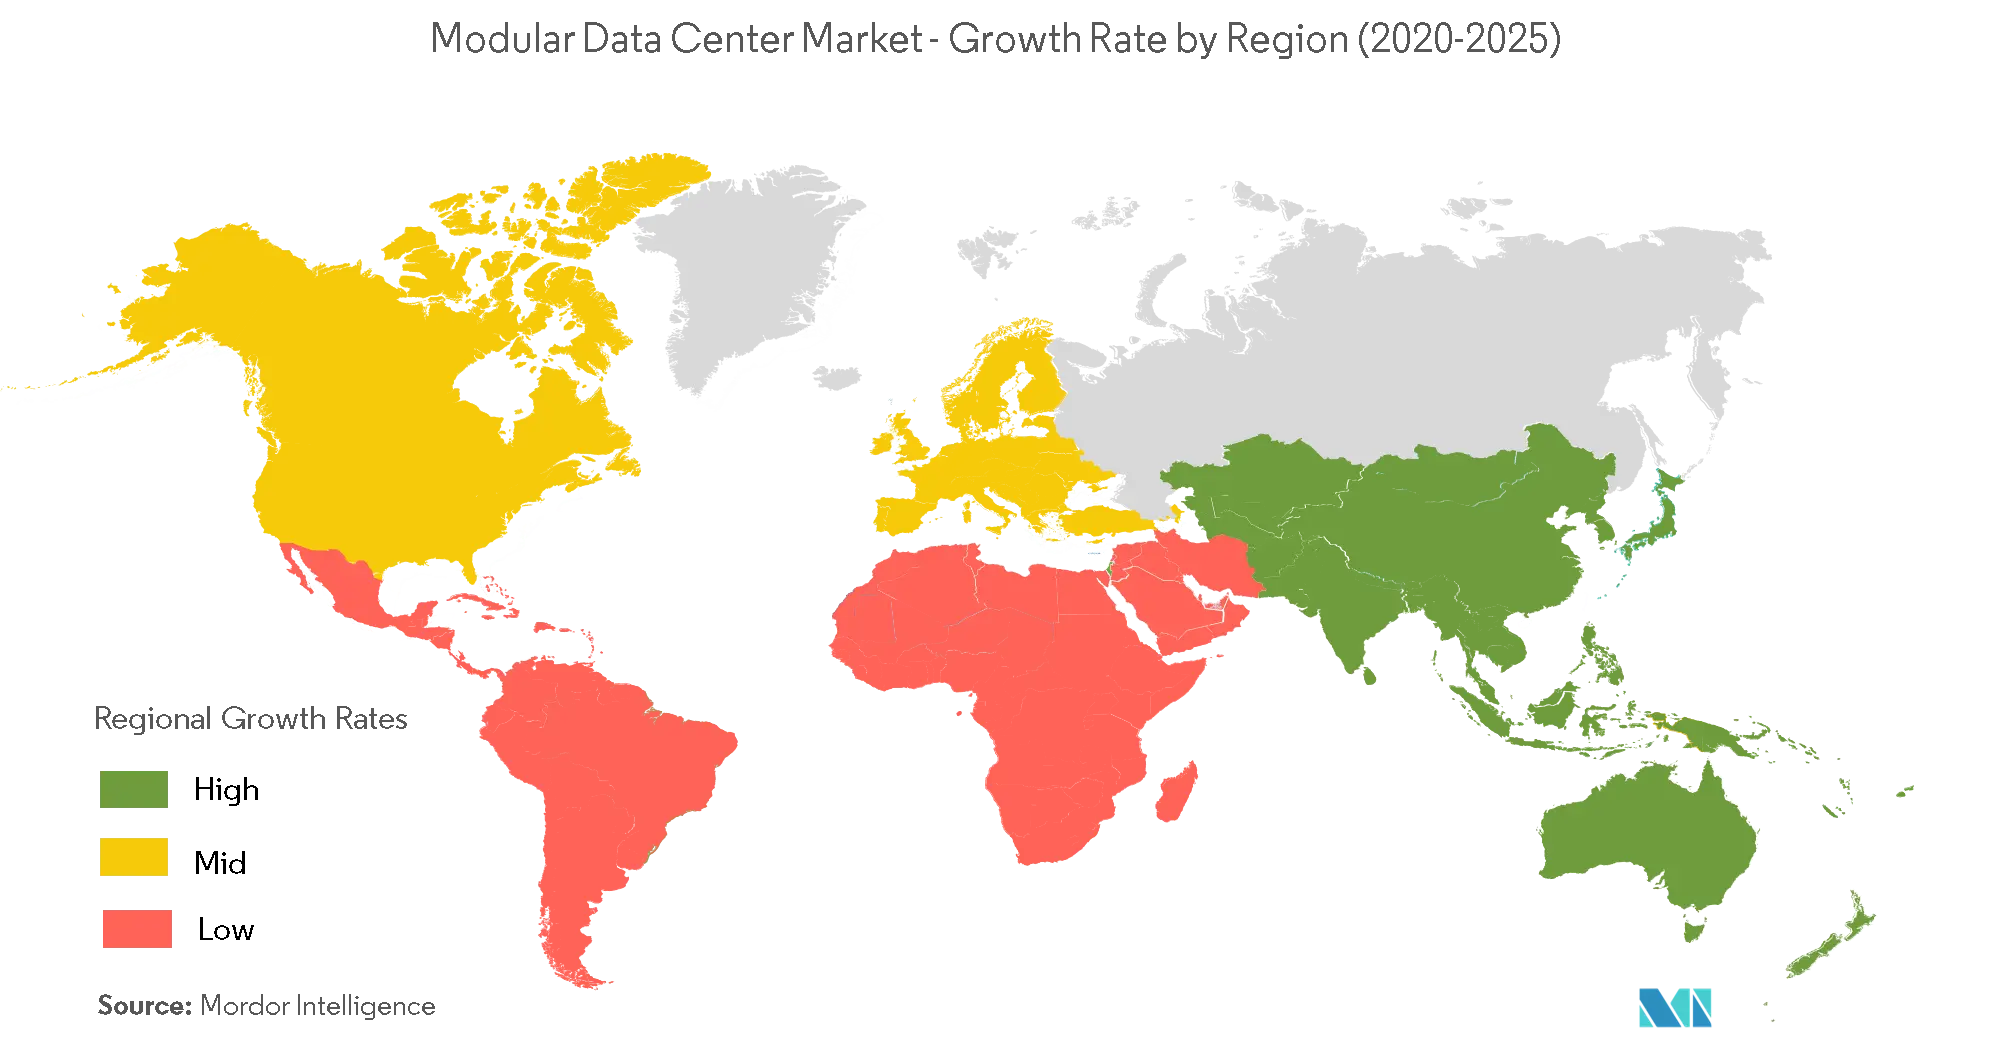 Modular Data Center Market Size